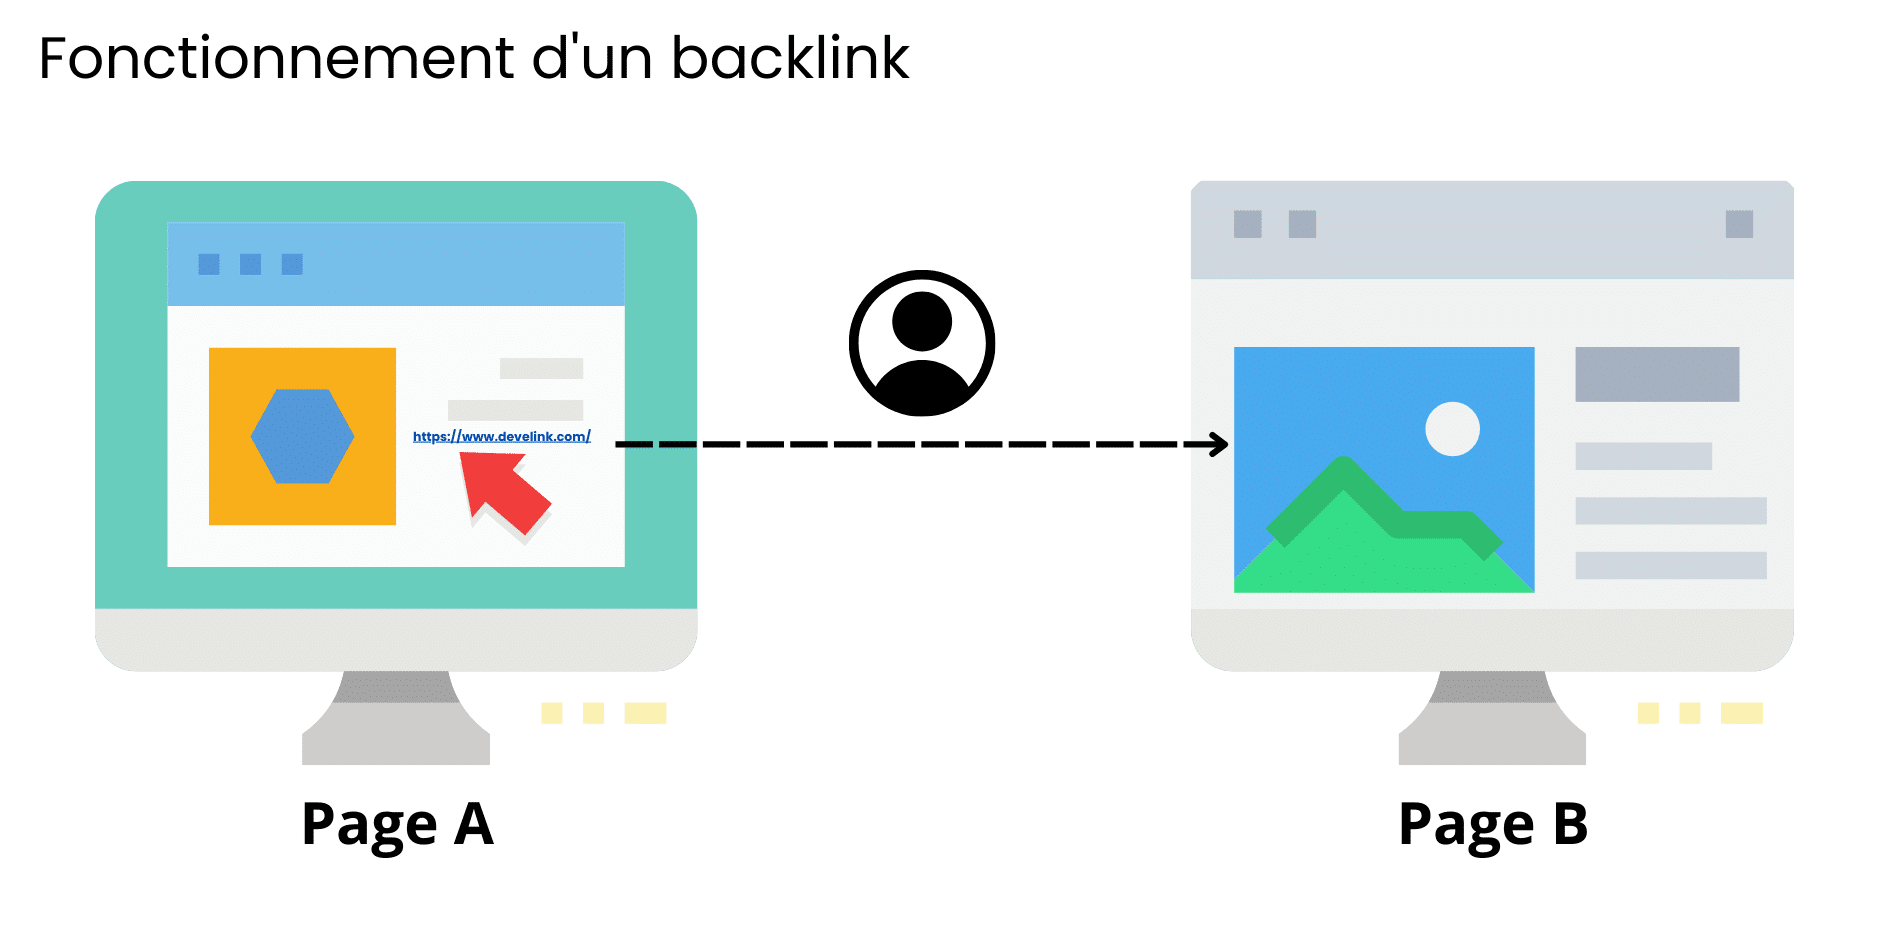 backlink - lien entrant - navigation web - netlinking - Develink